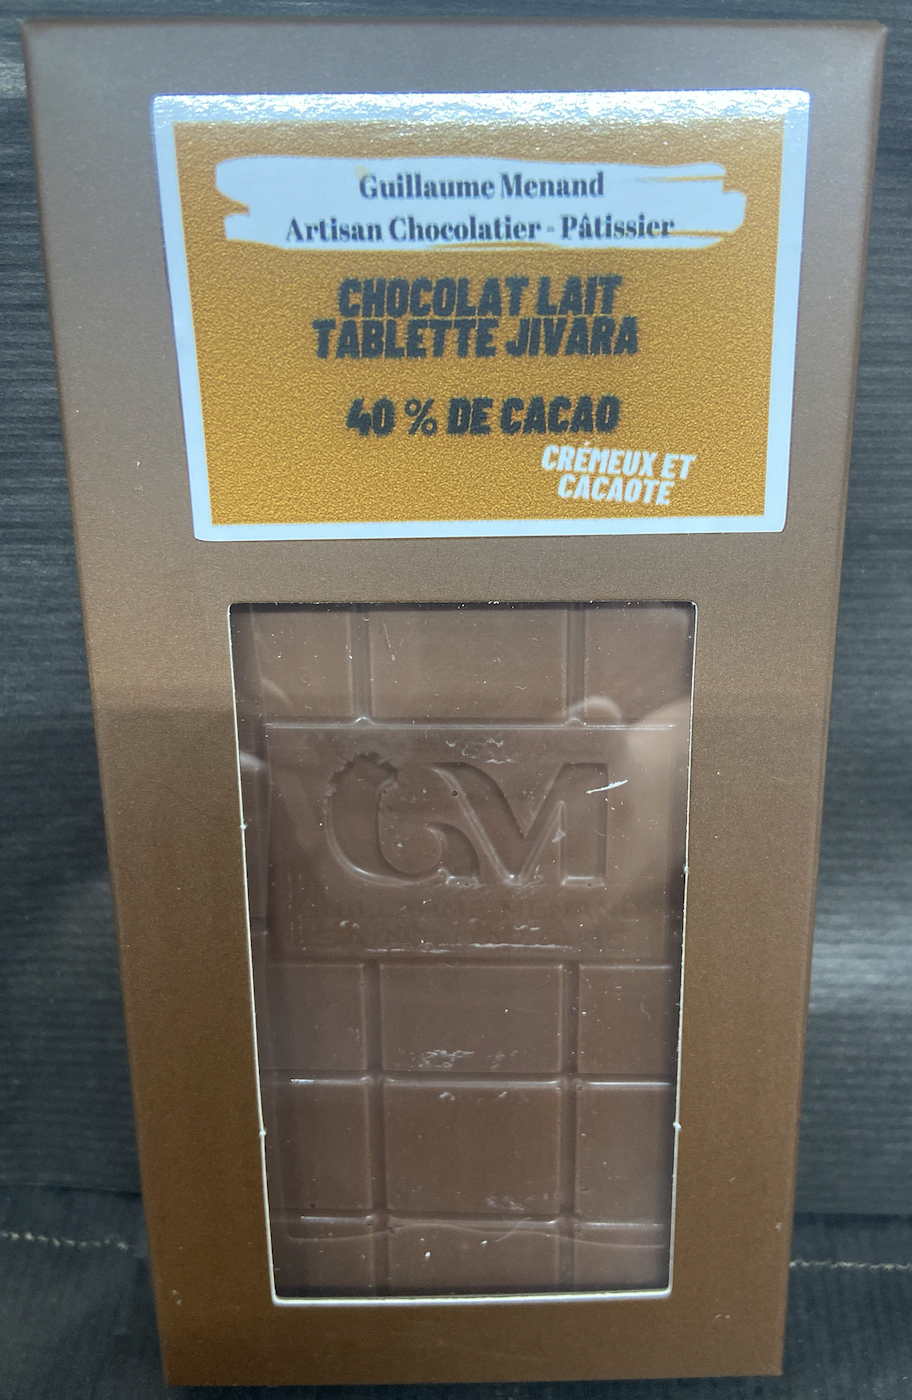 Tablette de Chocolat lait Jivara 40 %